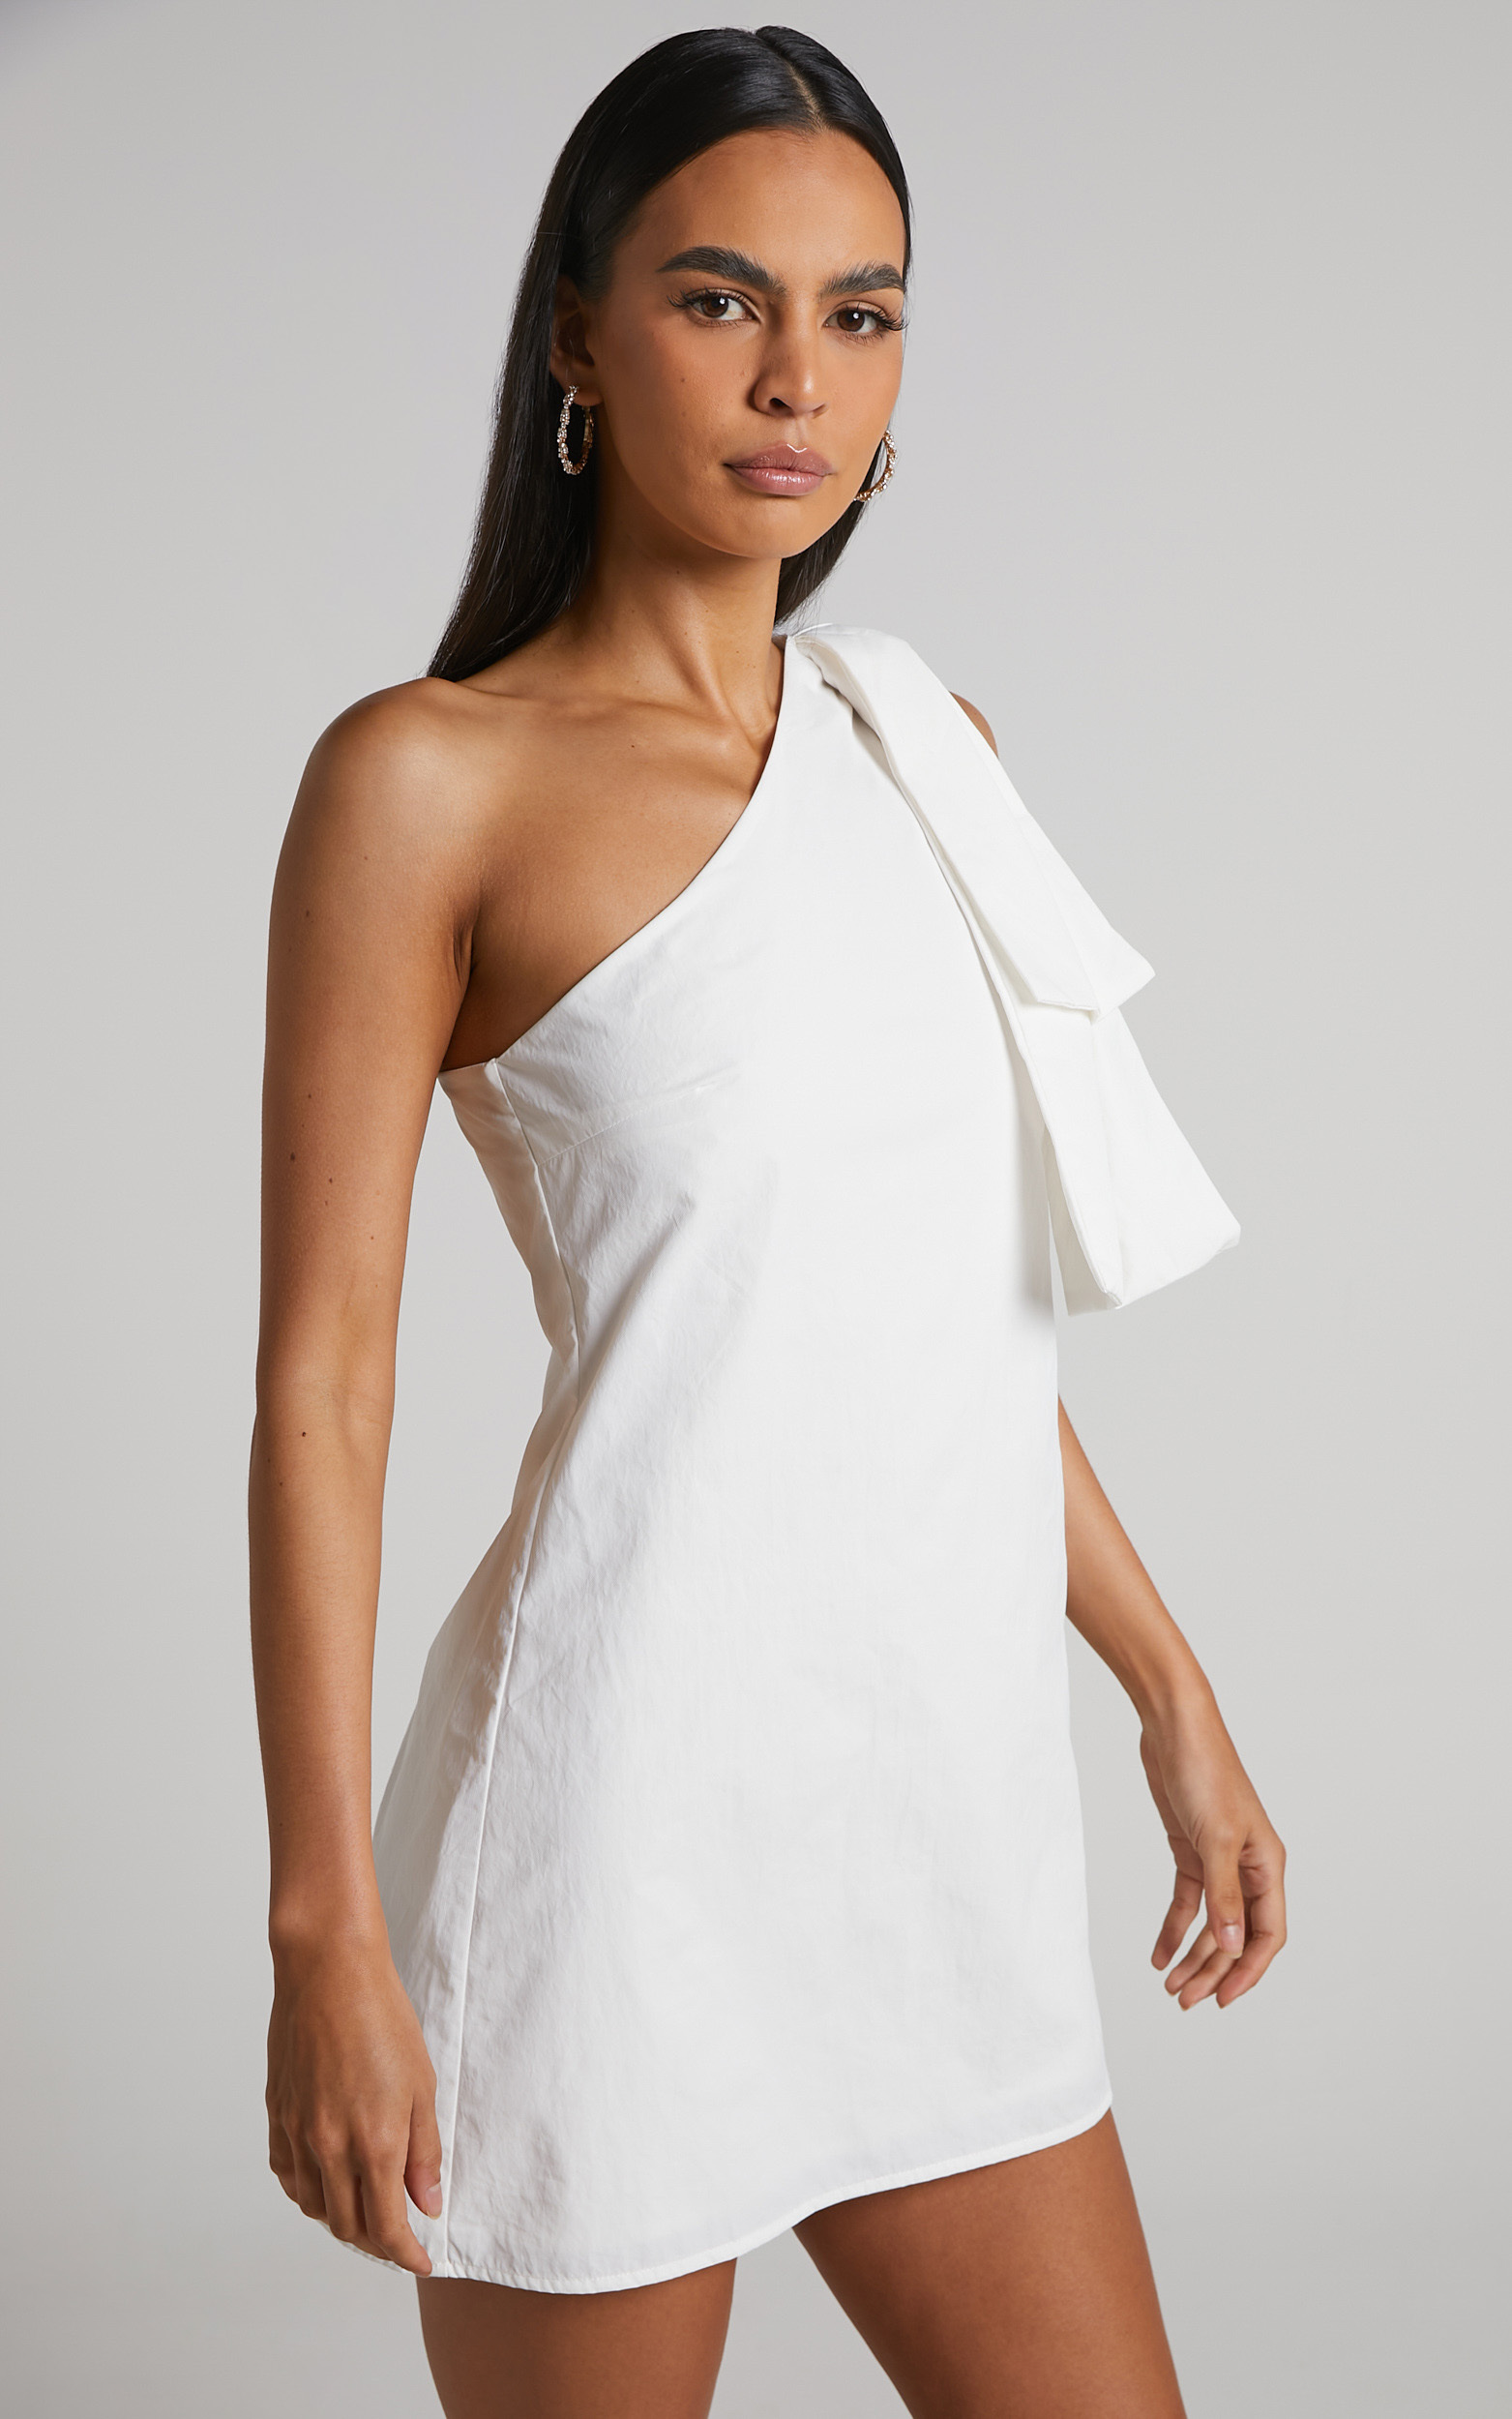 Khirara Mini Dress - One Shoulder Bow Detail Dress in White | Showpo USA